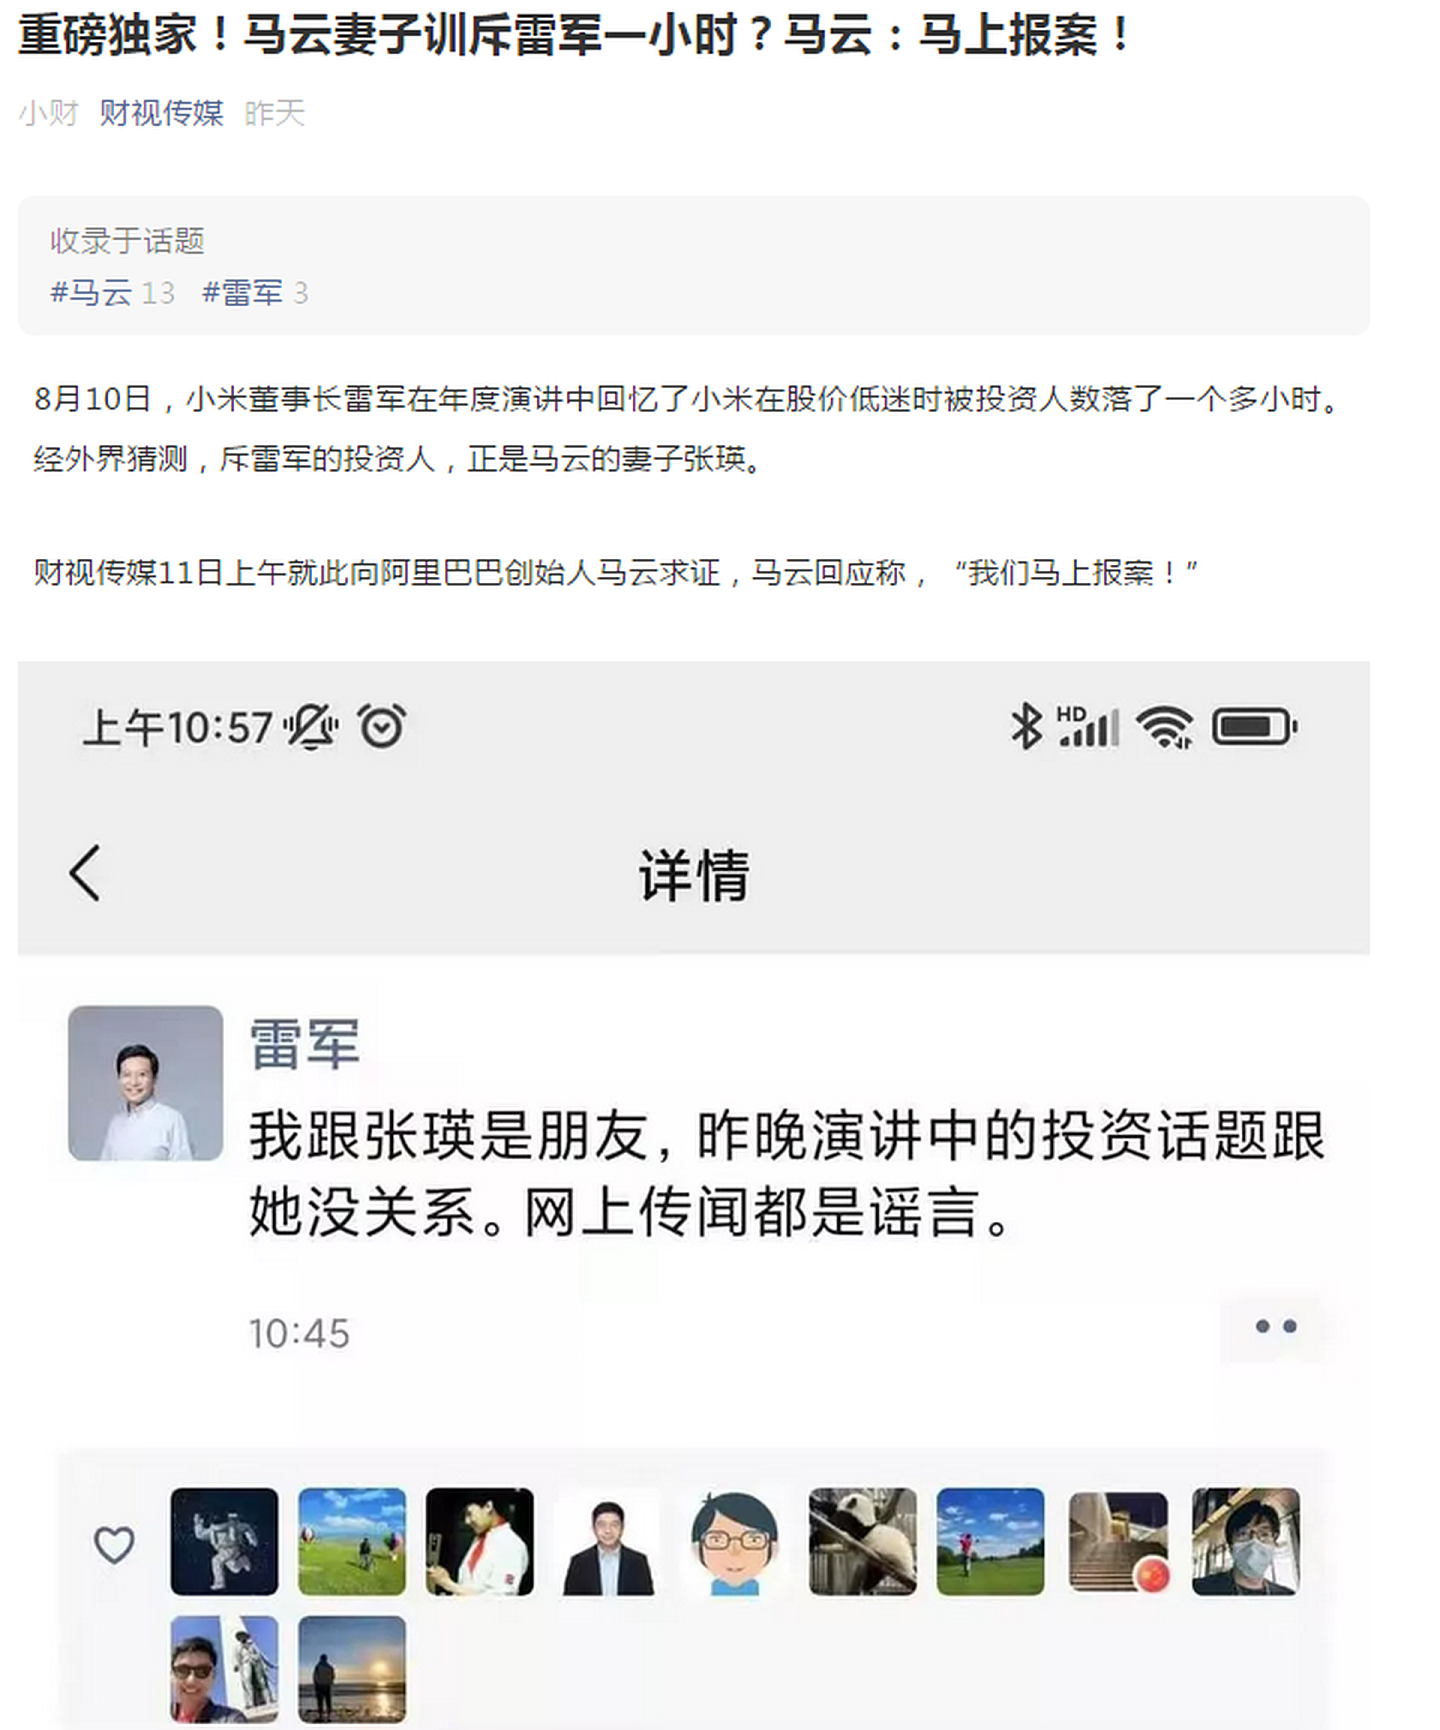 微信公众号为财视传媒的账号有独家消息称，马云对关于他妻子的传言选择报案。（微信公众号@财视传媒）